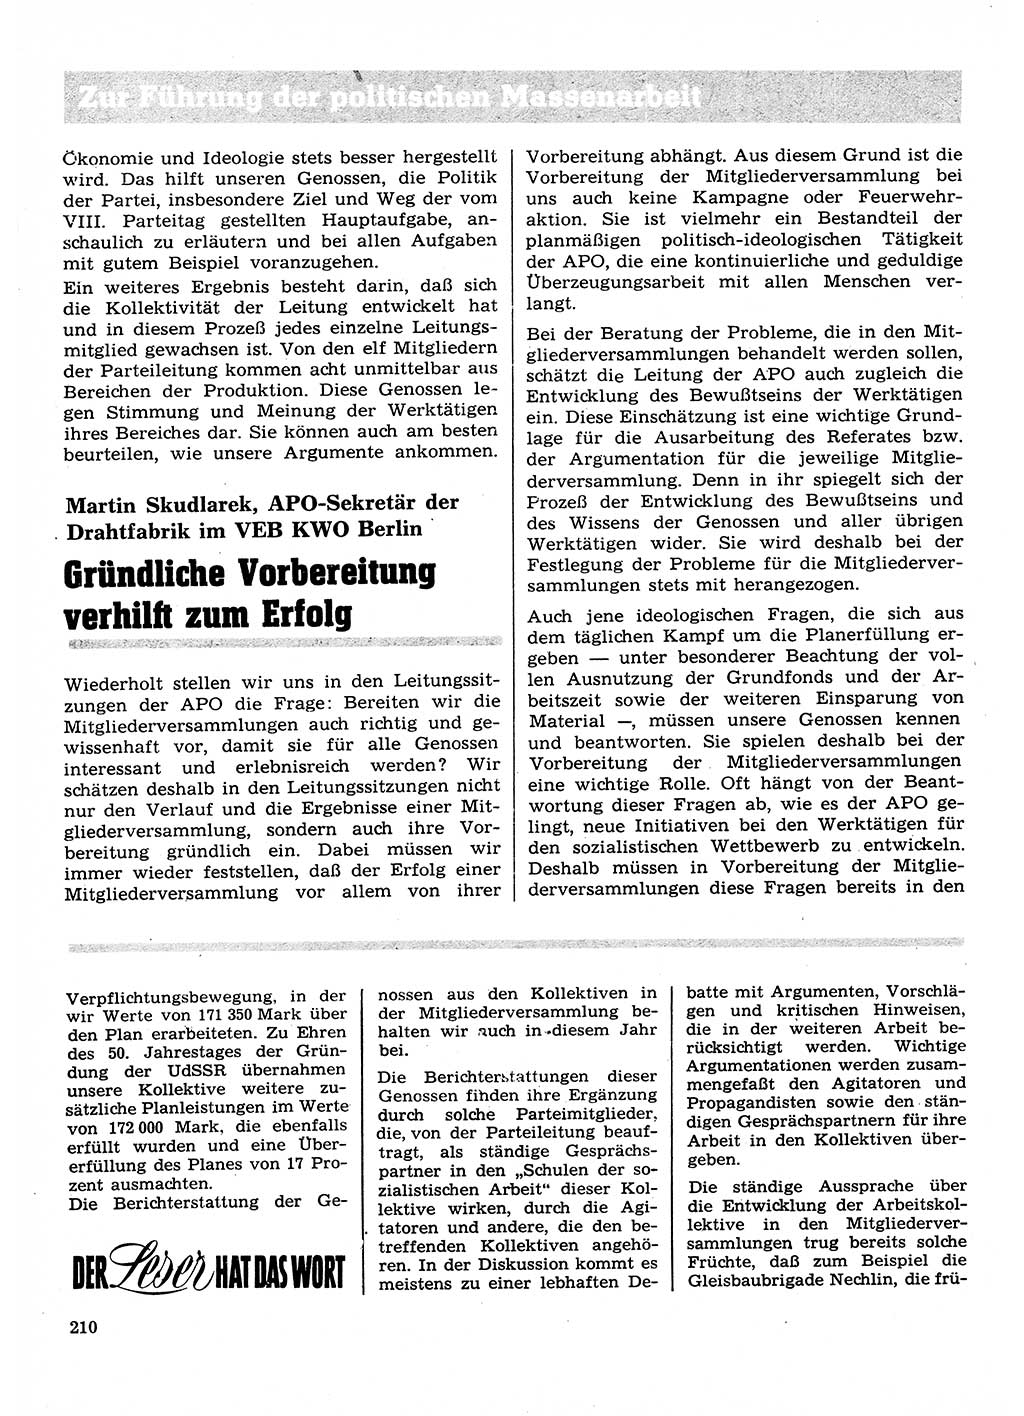 Neuer Weg (NW), Organ des Zentralkomitees (ZK) der SED (Sozialistische Einheitspartei Deutschlands) für Fragen des Parteilebens, 28. Jahrgang [Deutsche Demokratische Republik (DDR)] 1973, Seite 210 (NW ZK SED DDR 1973, S. 210)